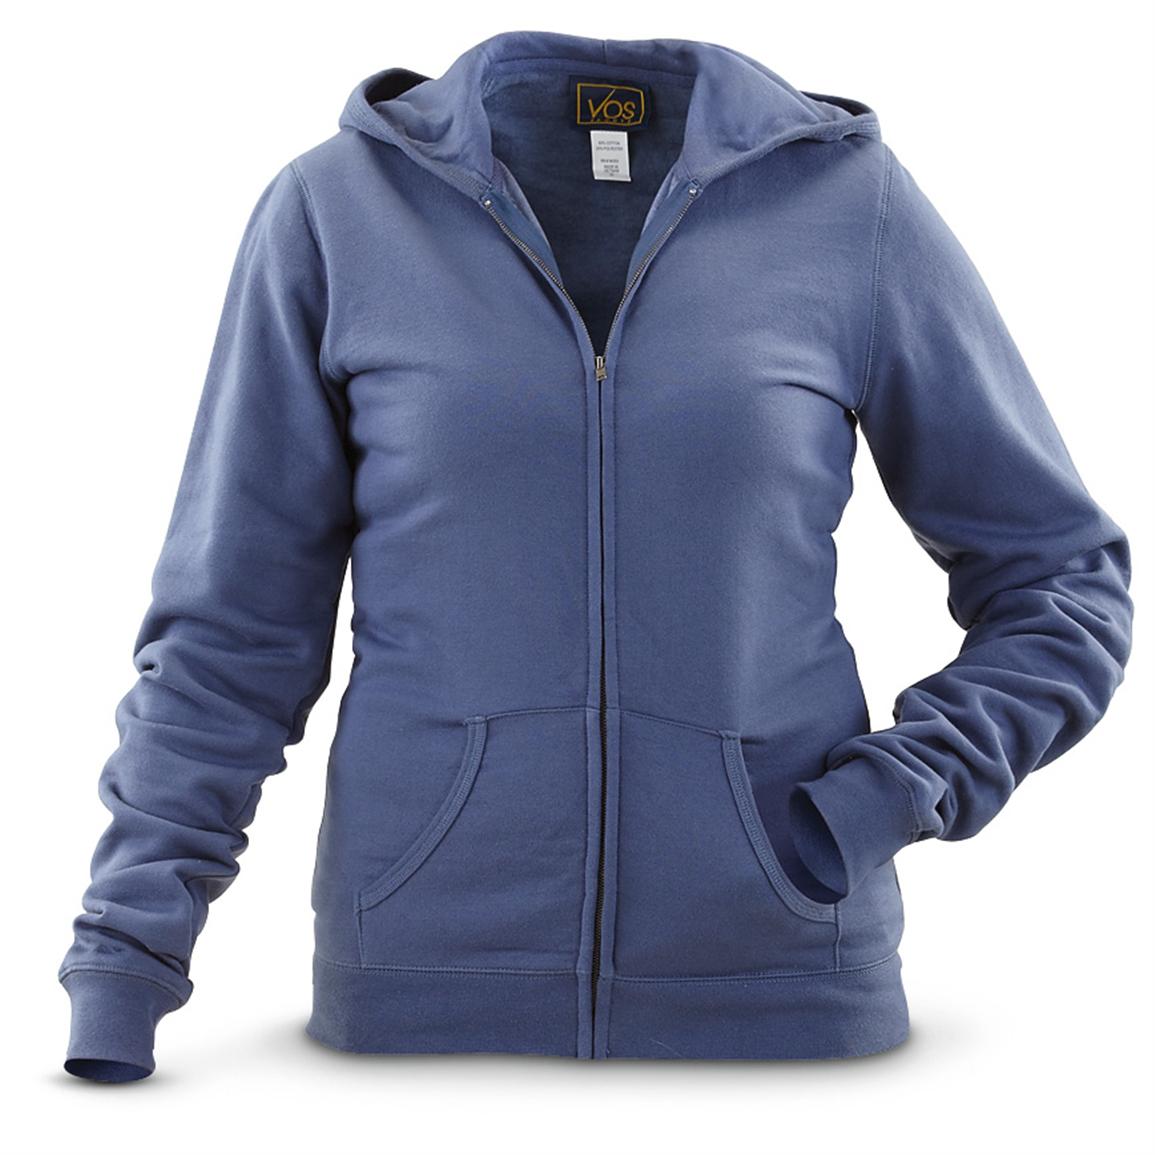 2 Women's Vos Sports® Full-zip Fleece Hoodies - 424419, at Sportsman's ...